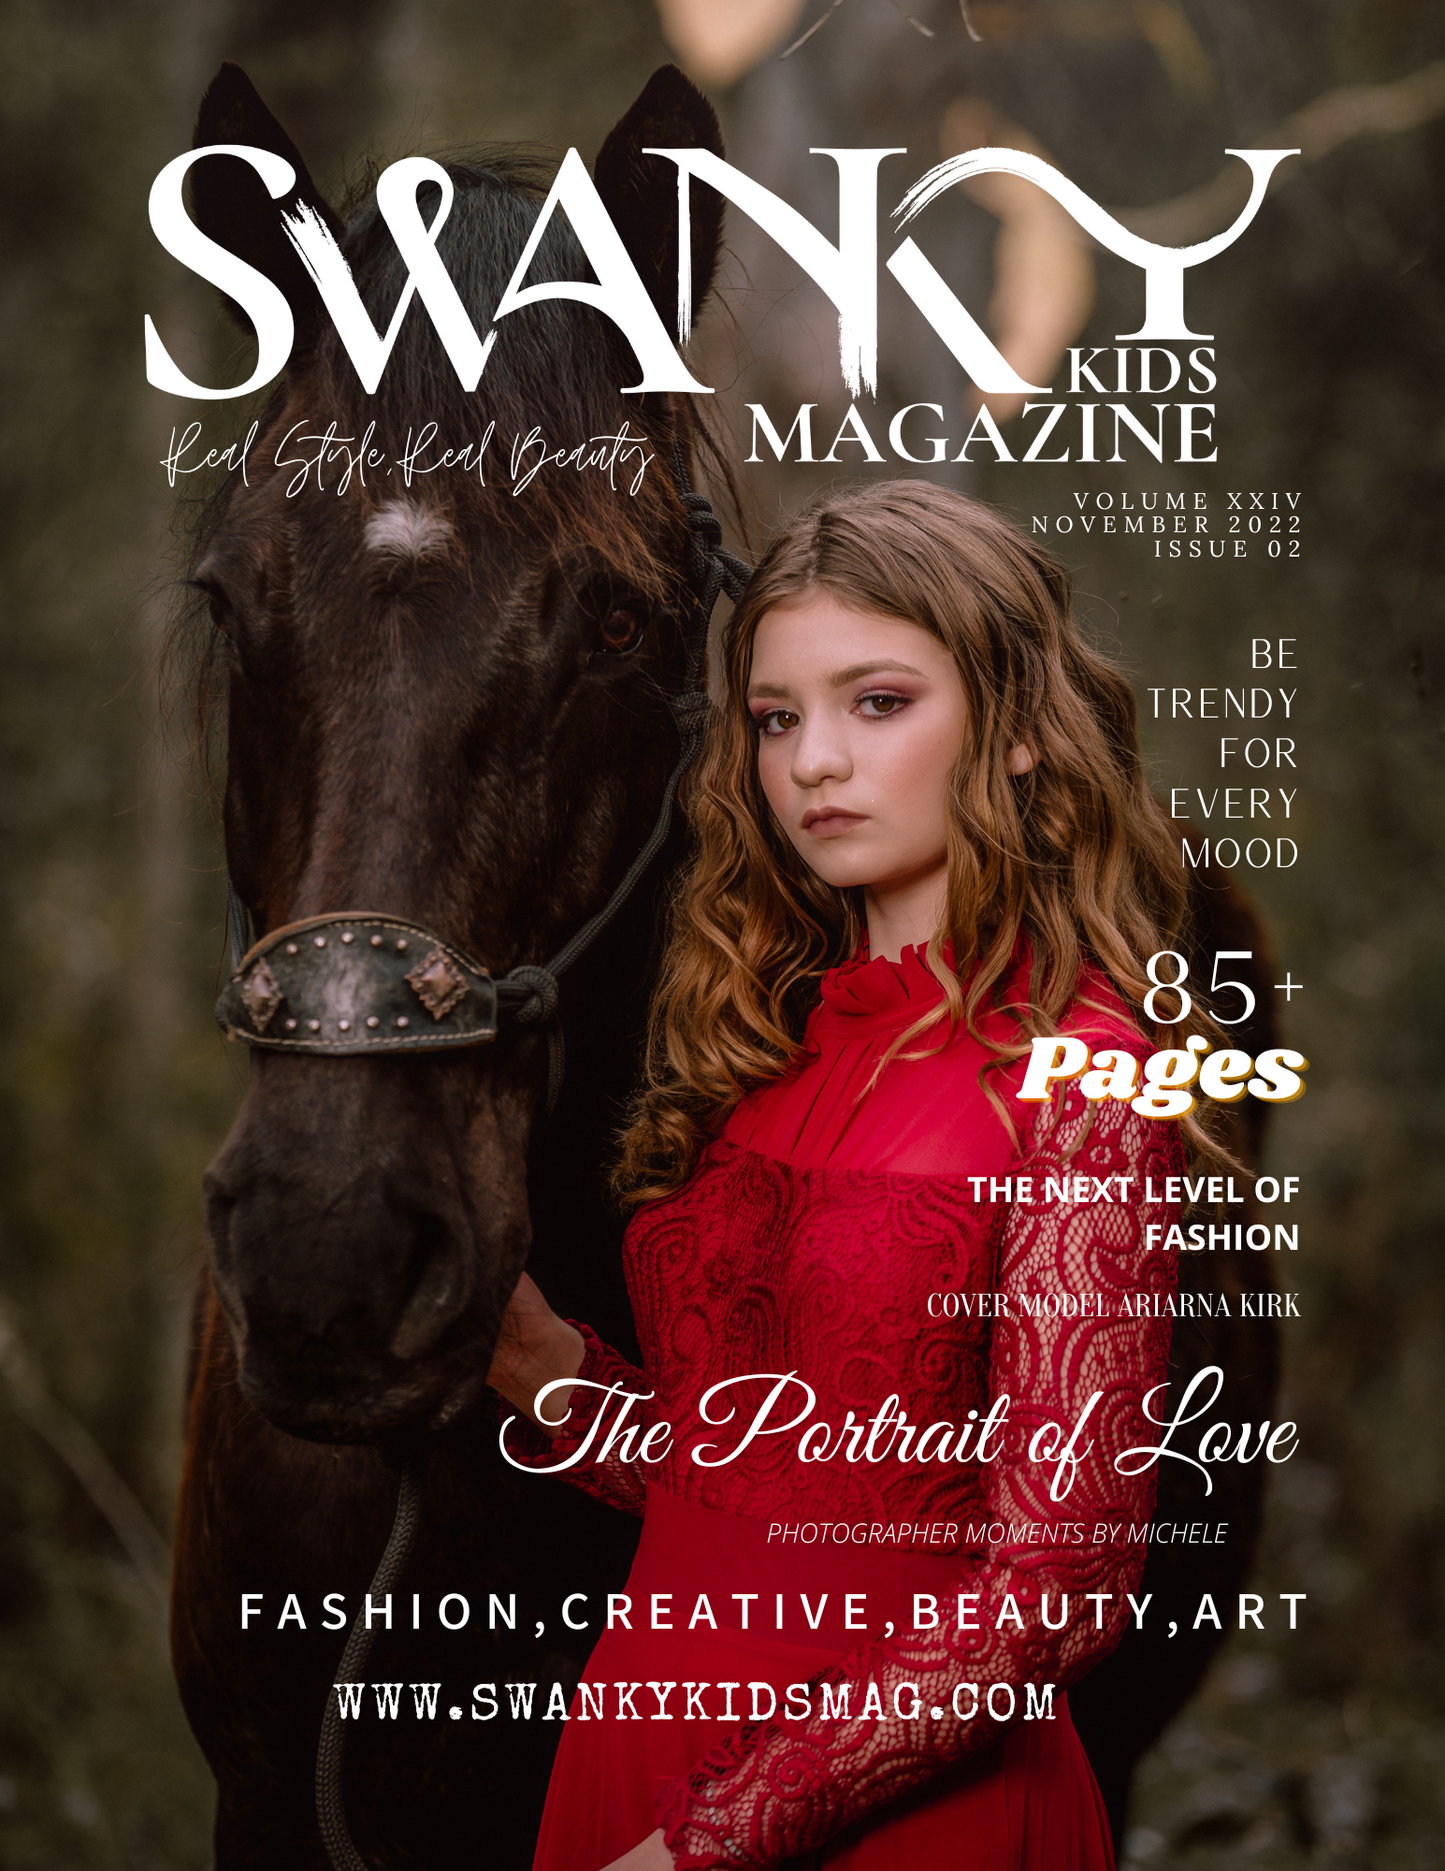 Swanky Kids Magazine November 2022 VOL XXIV Issue 02